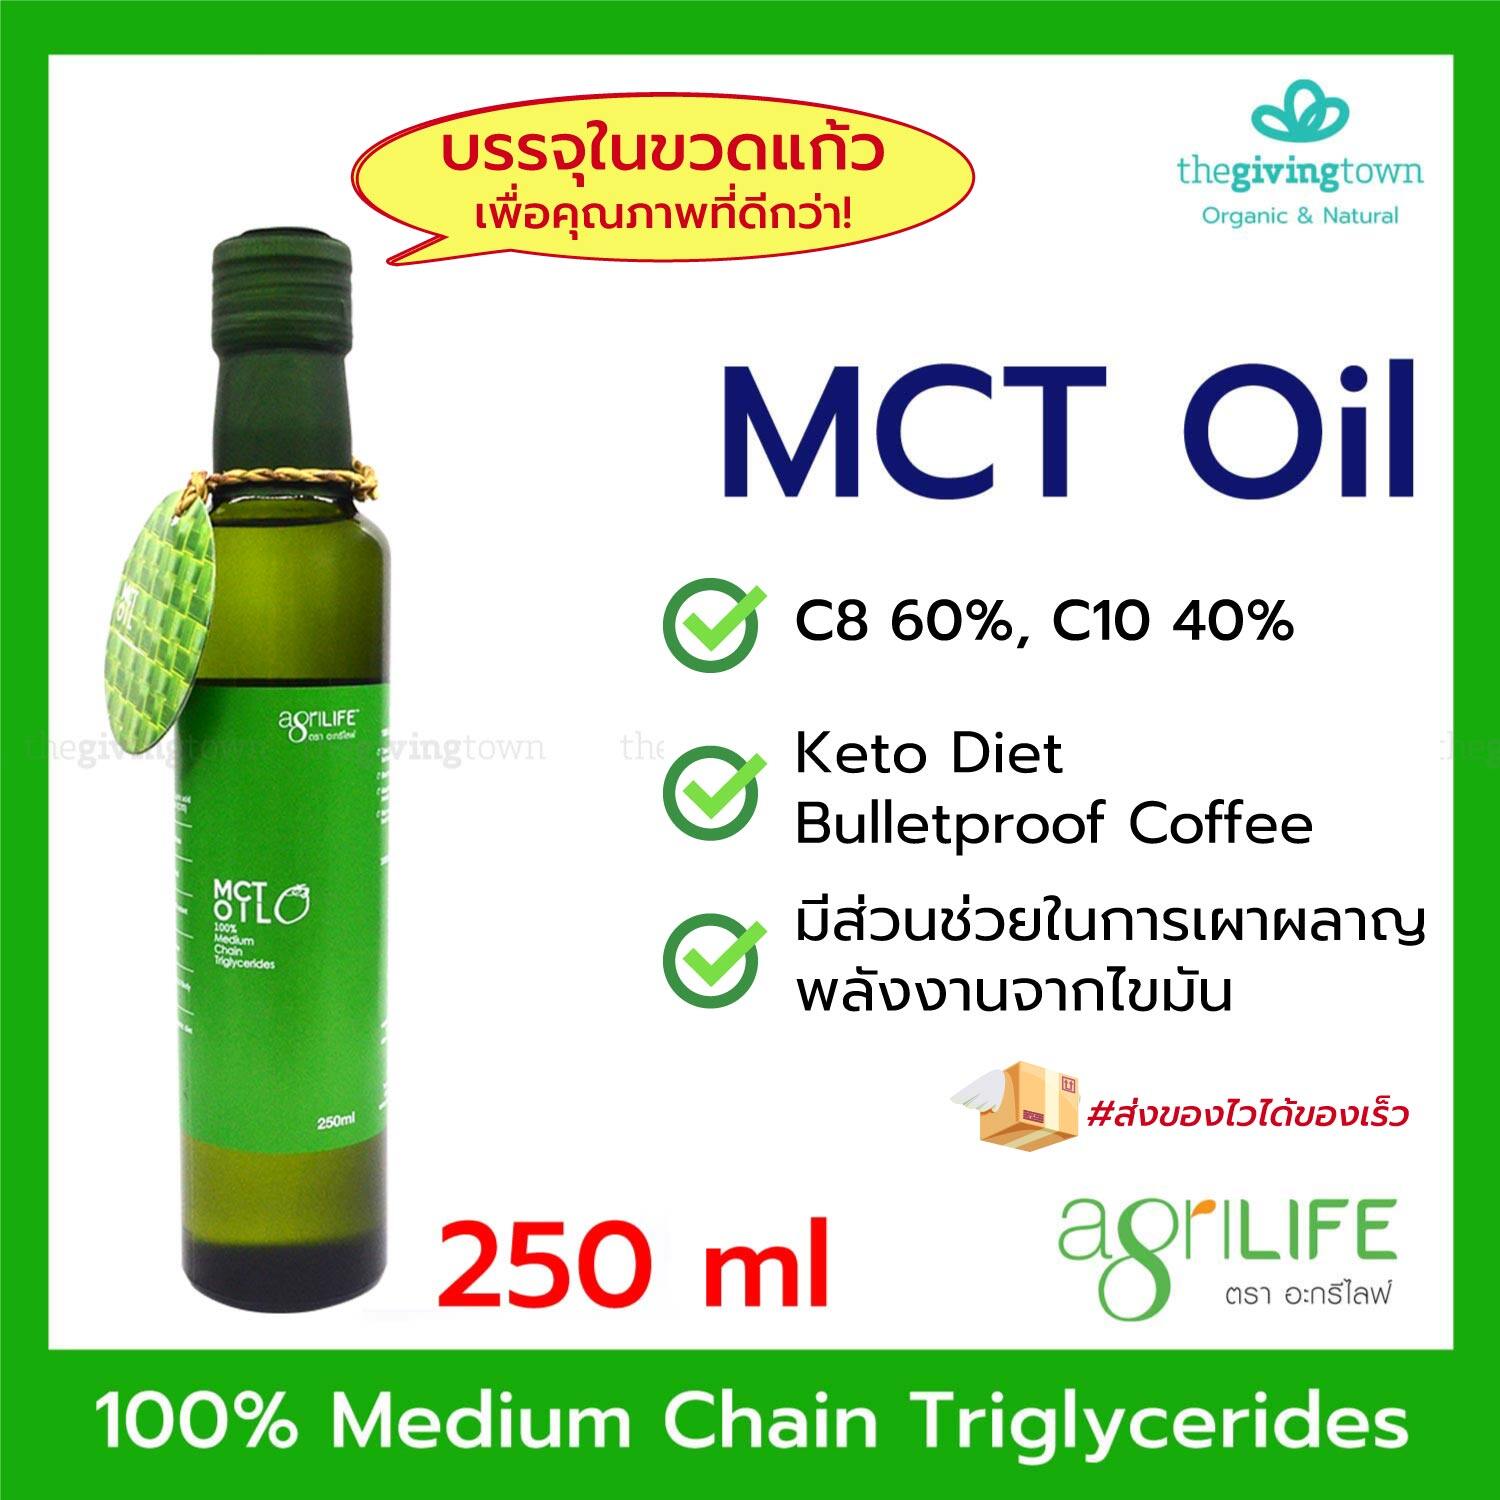 MCT Oil - Agrilife น้ำมันเอ็มซีทีออยล์ 250 มล. ขวดเล็ก | เหมาะสำหรับผุ้ที่ทานคีโต Keto Diet สินค้าคีโต น้ำมันคีโต เอ็มซีที MCTOil มี C8 C10 Medium Chain Triglyceride. น้ำมันไร้กลิ่น Bulletproof Coffee น้ำมันMCT ขวดแก้ว